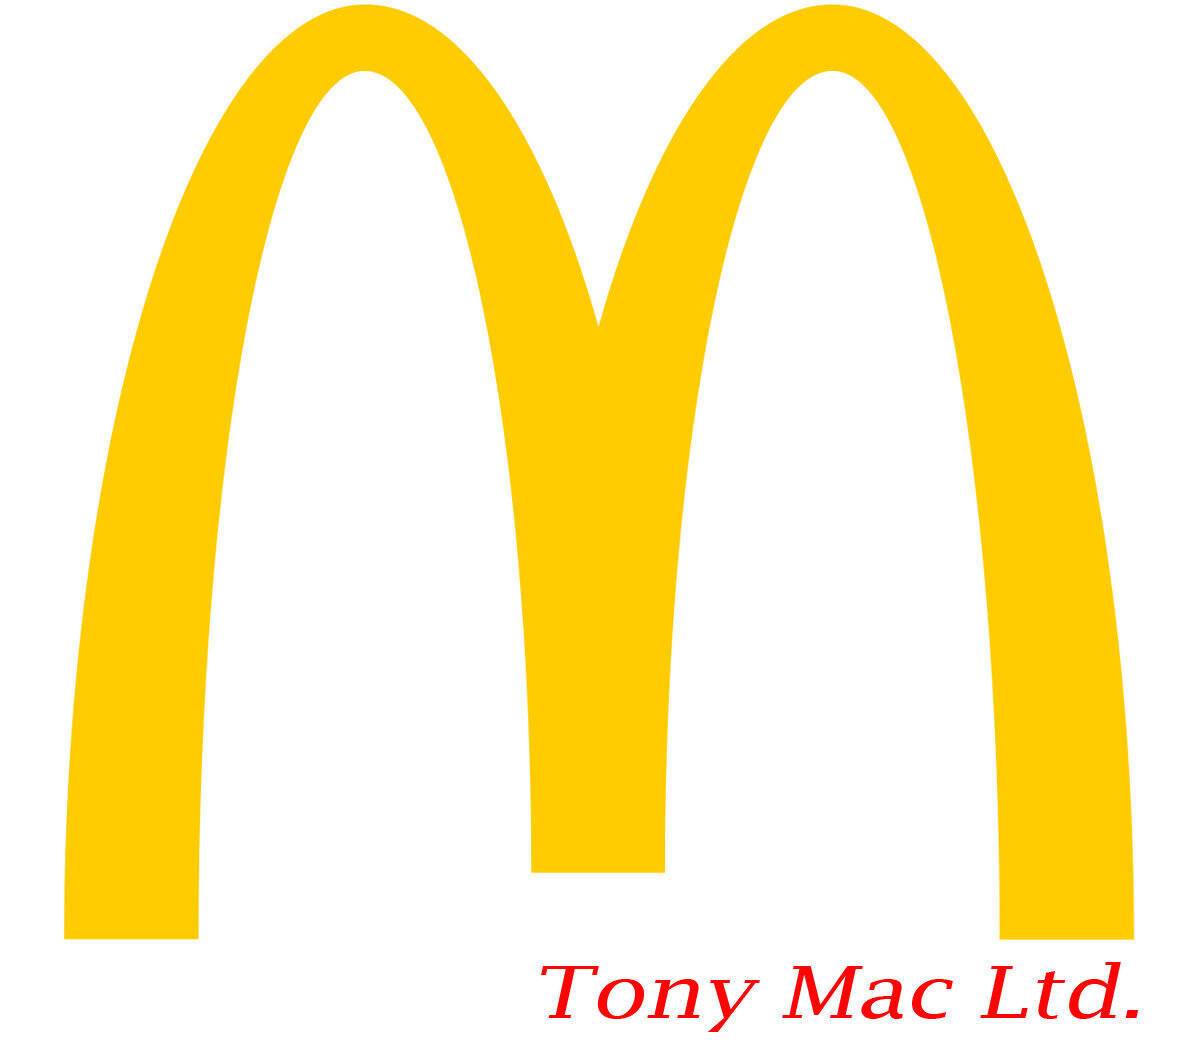 Tony Mac Ltd